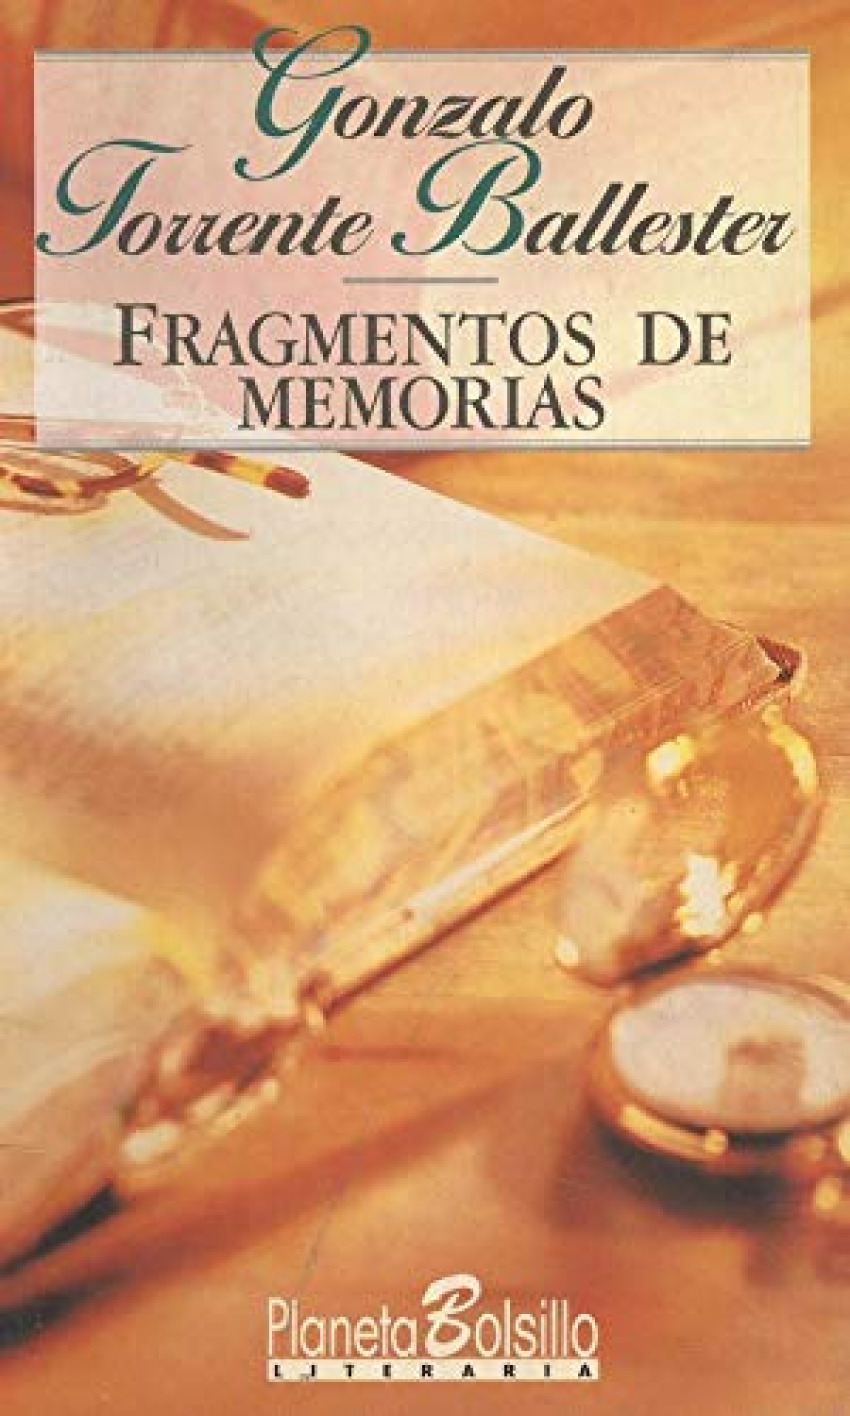 Fragmentos de memorias - Torrente Ballester, Gonzalo